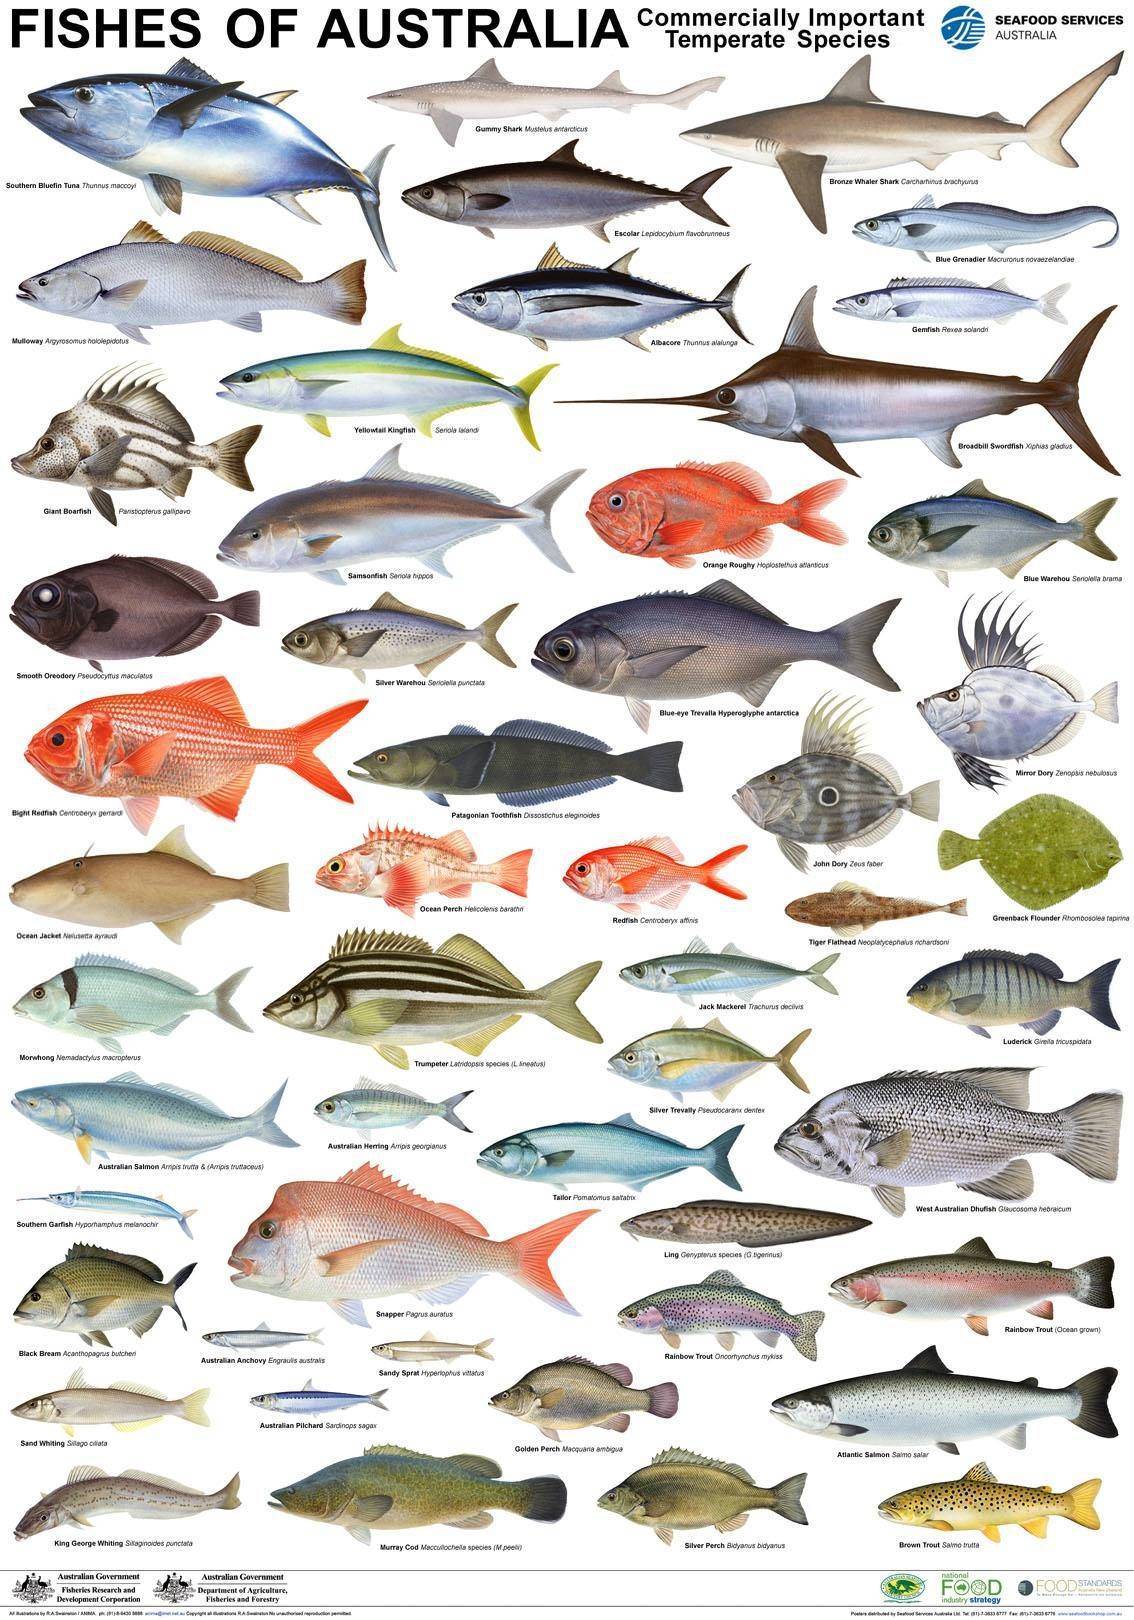 Аквариумные рыбки — фото с названием и описанием, более 200 разновидностей.